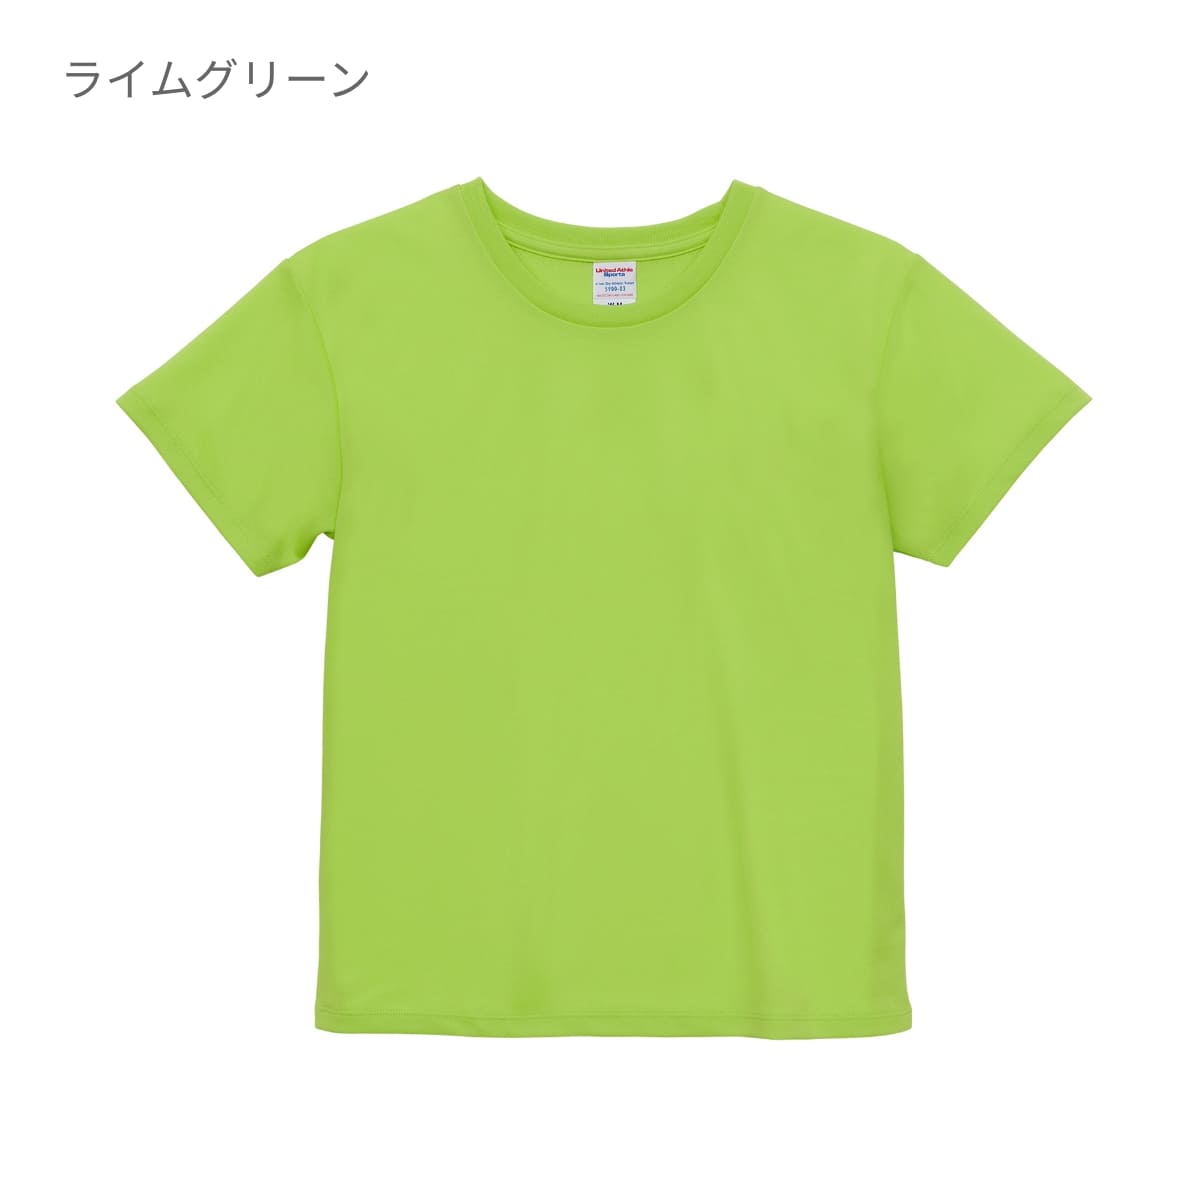 4.1オンス ドライアスレチック Tシャツ | レディース | 1枚 | 5900-03 | ローズレッド